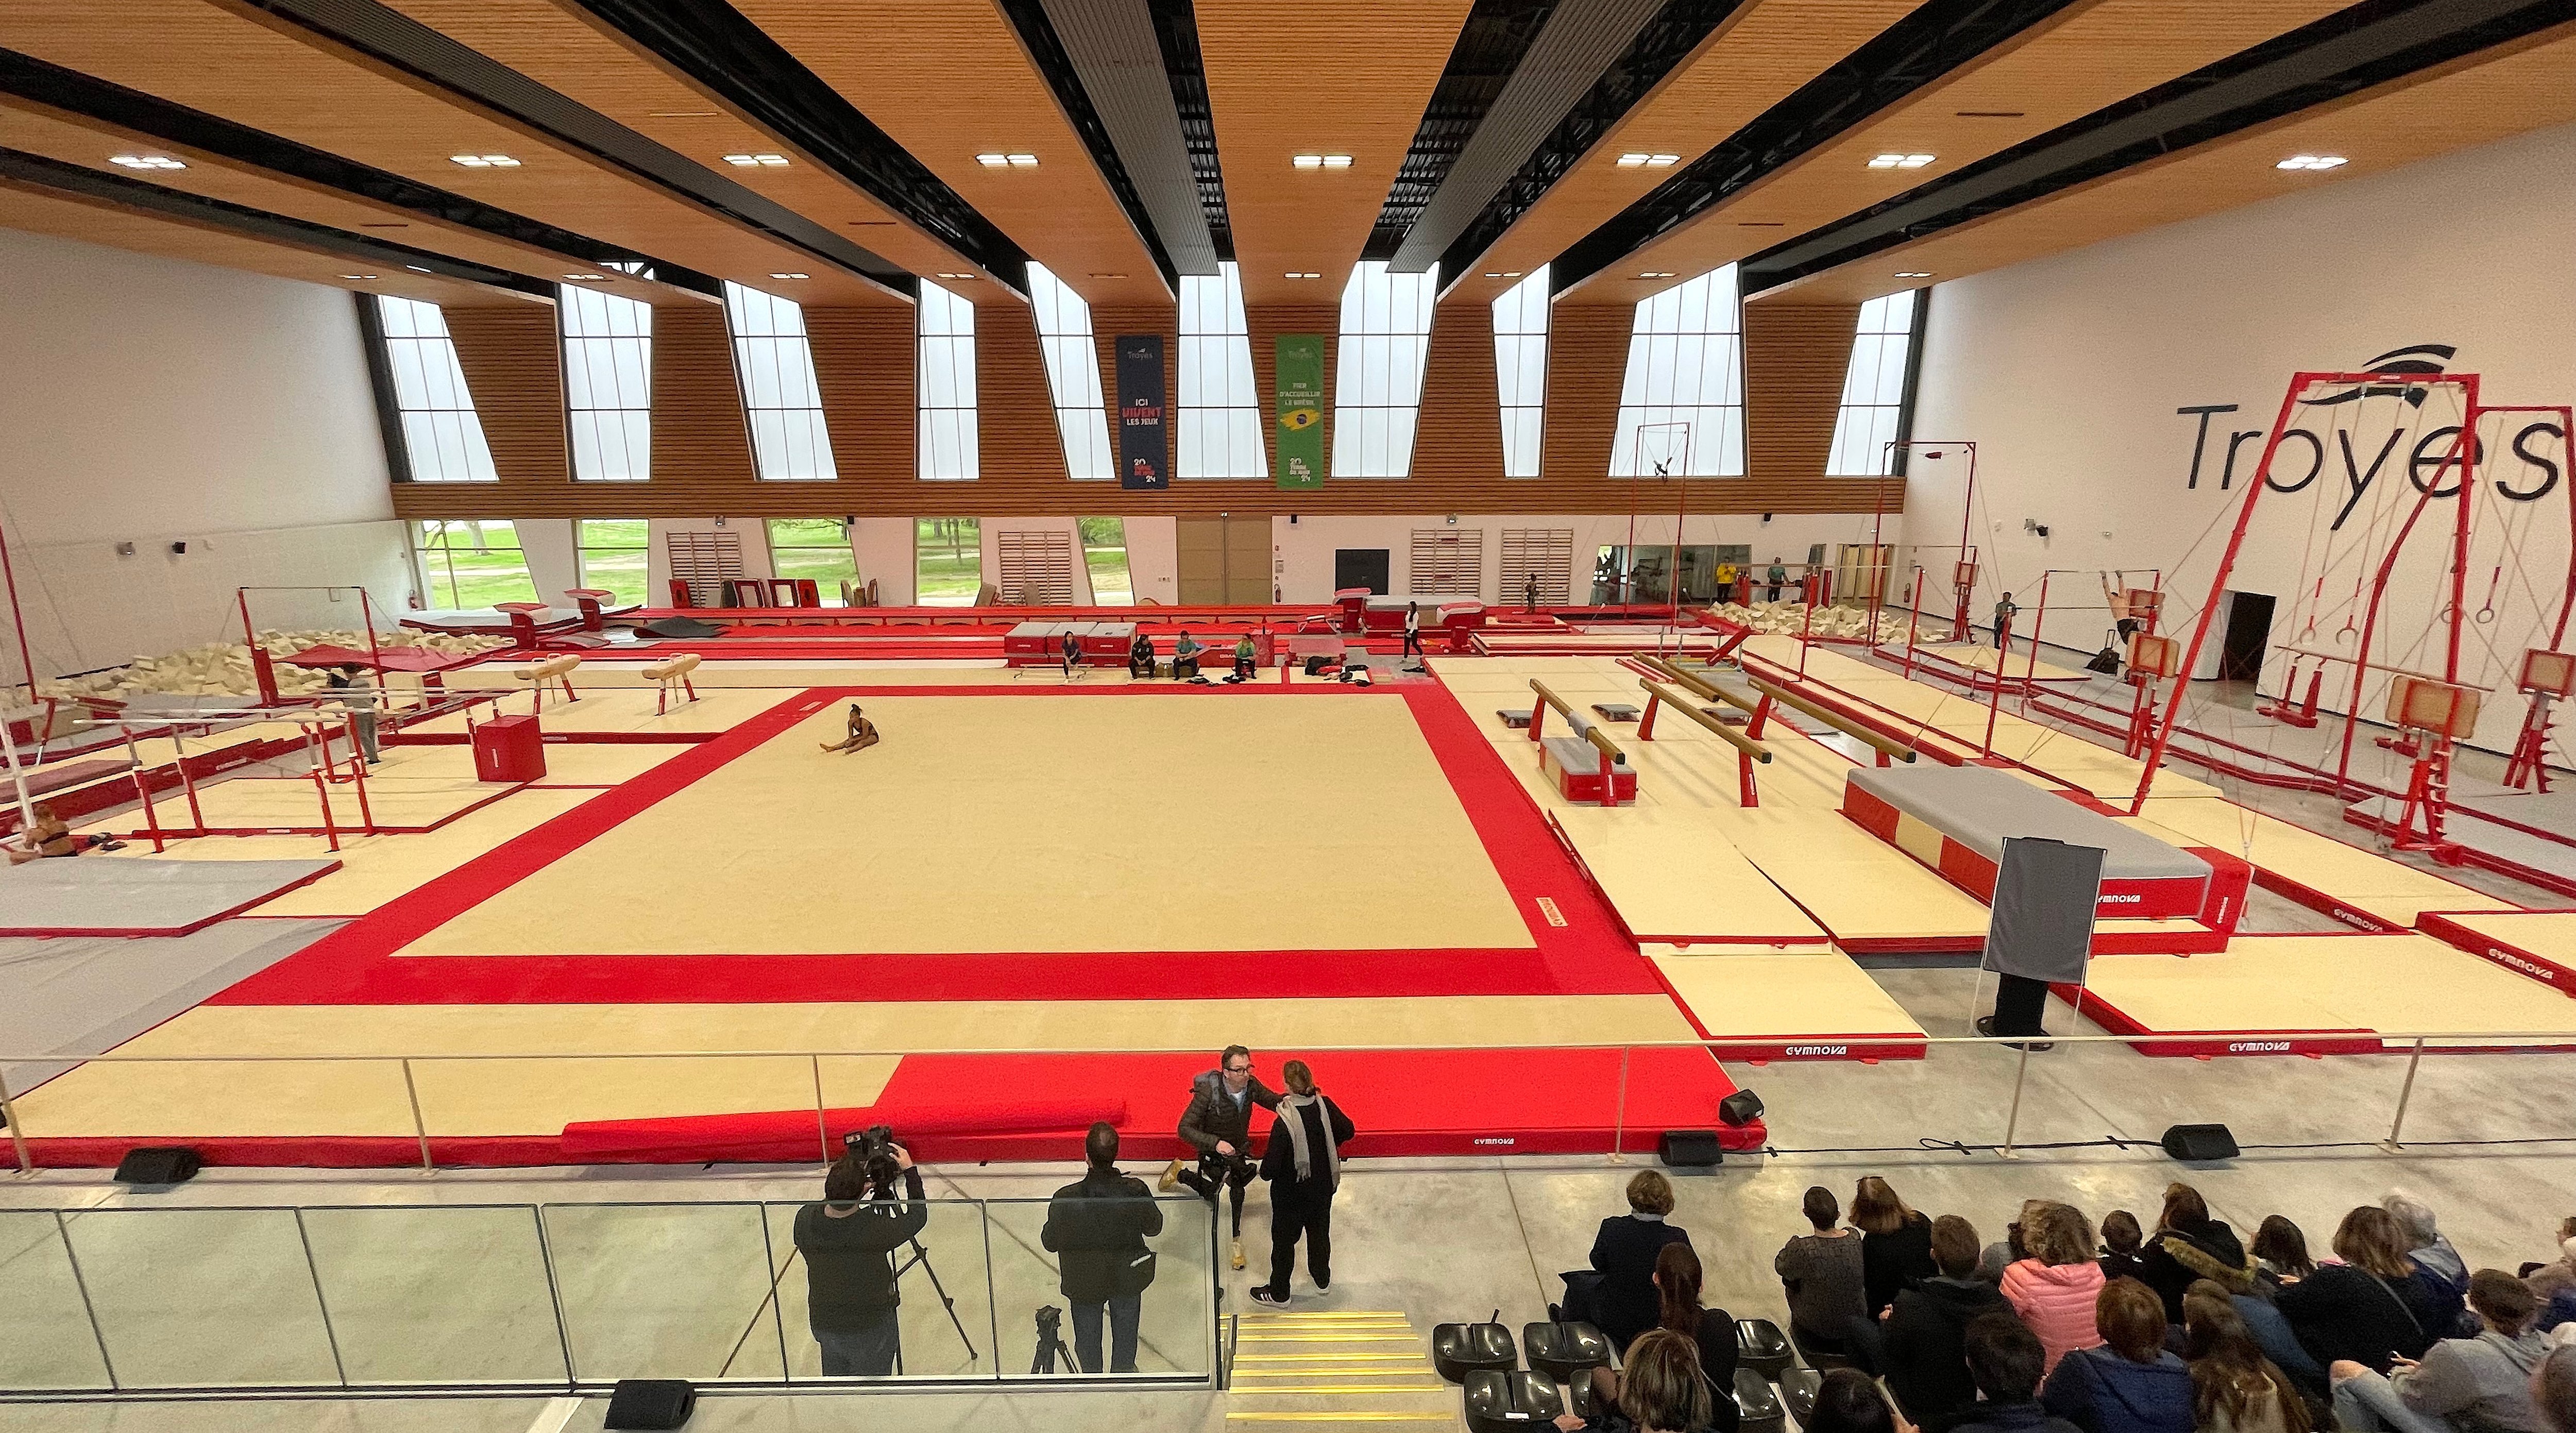 Sur l'élan des Jeux de Paris 2024, Troyes a investi dans une salle de gymnastique ultra-moderne. Le Brésil et le Kazakhstan vont venir y préparer les Jeux olympiques. LP/Stéphane Magnoux